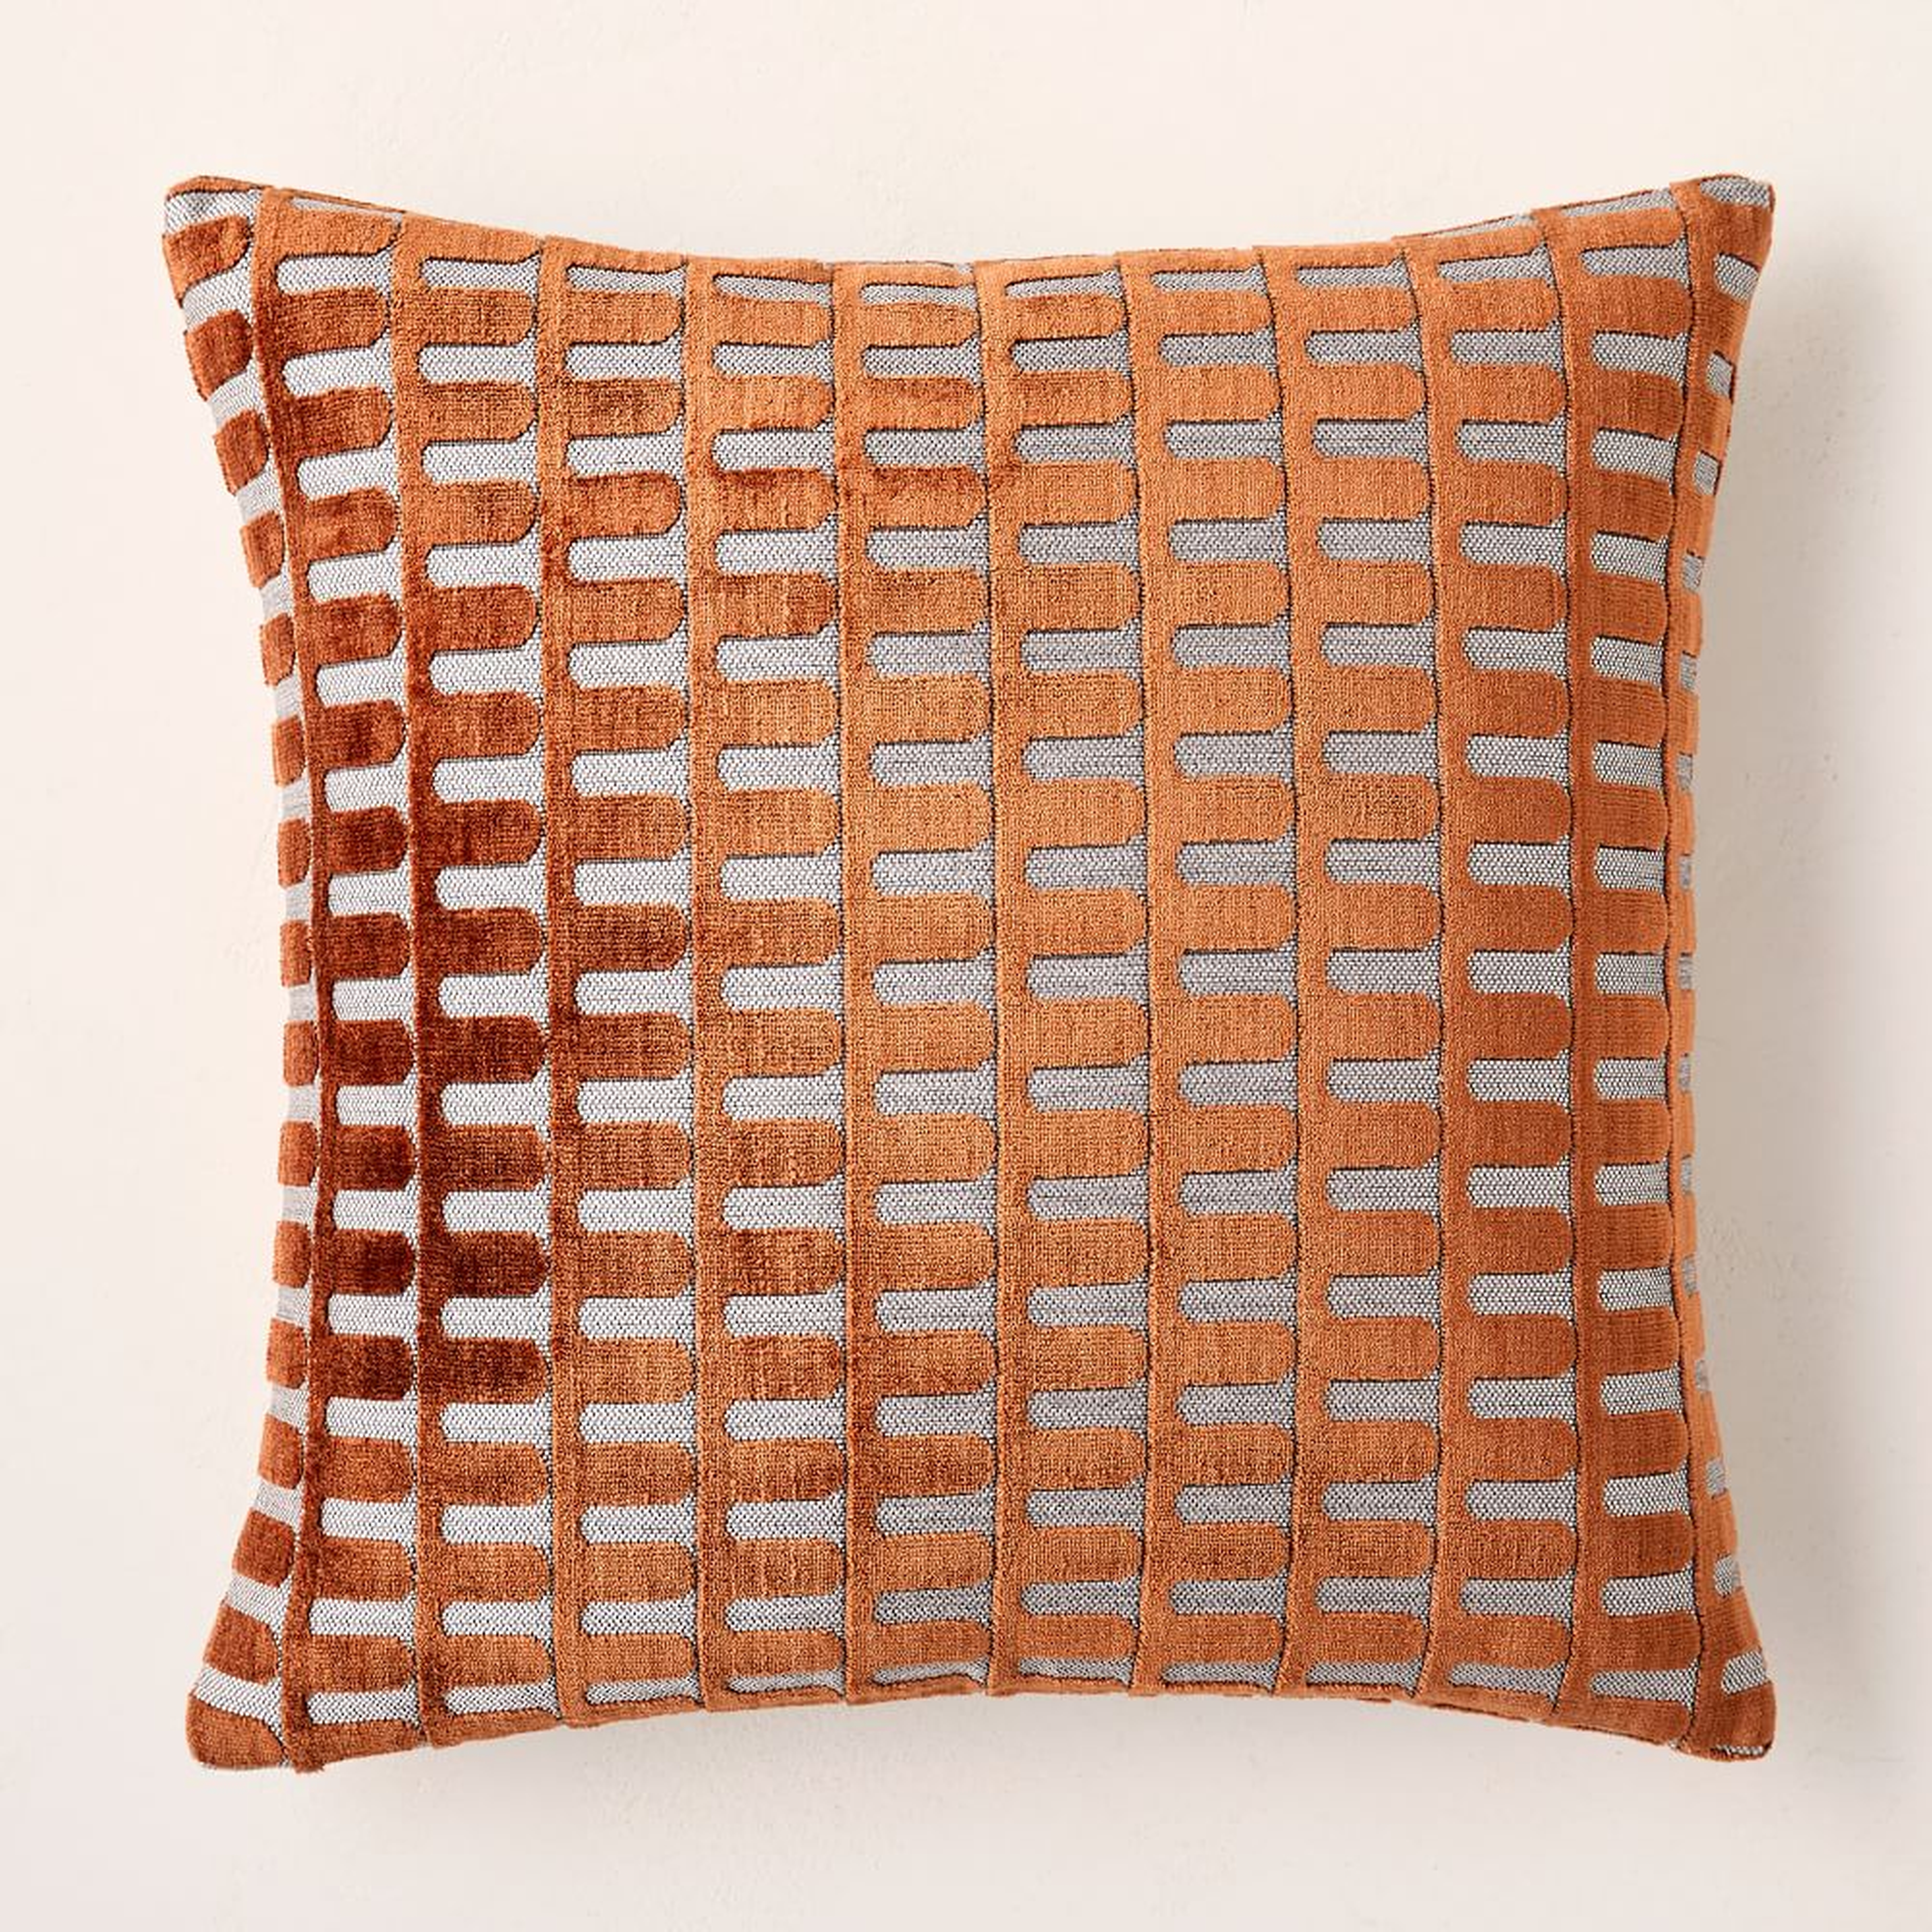 Cut Velvet Archways Pillow Cover, 18"x18", Copper - West Elm